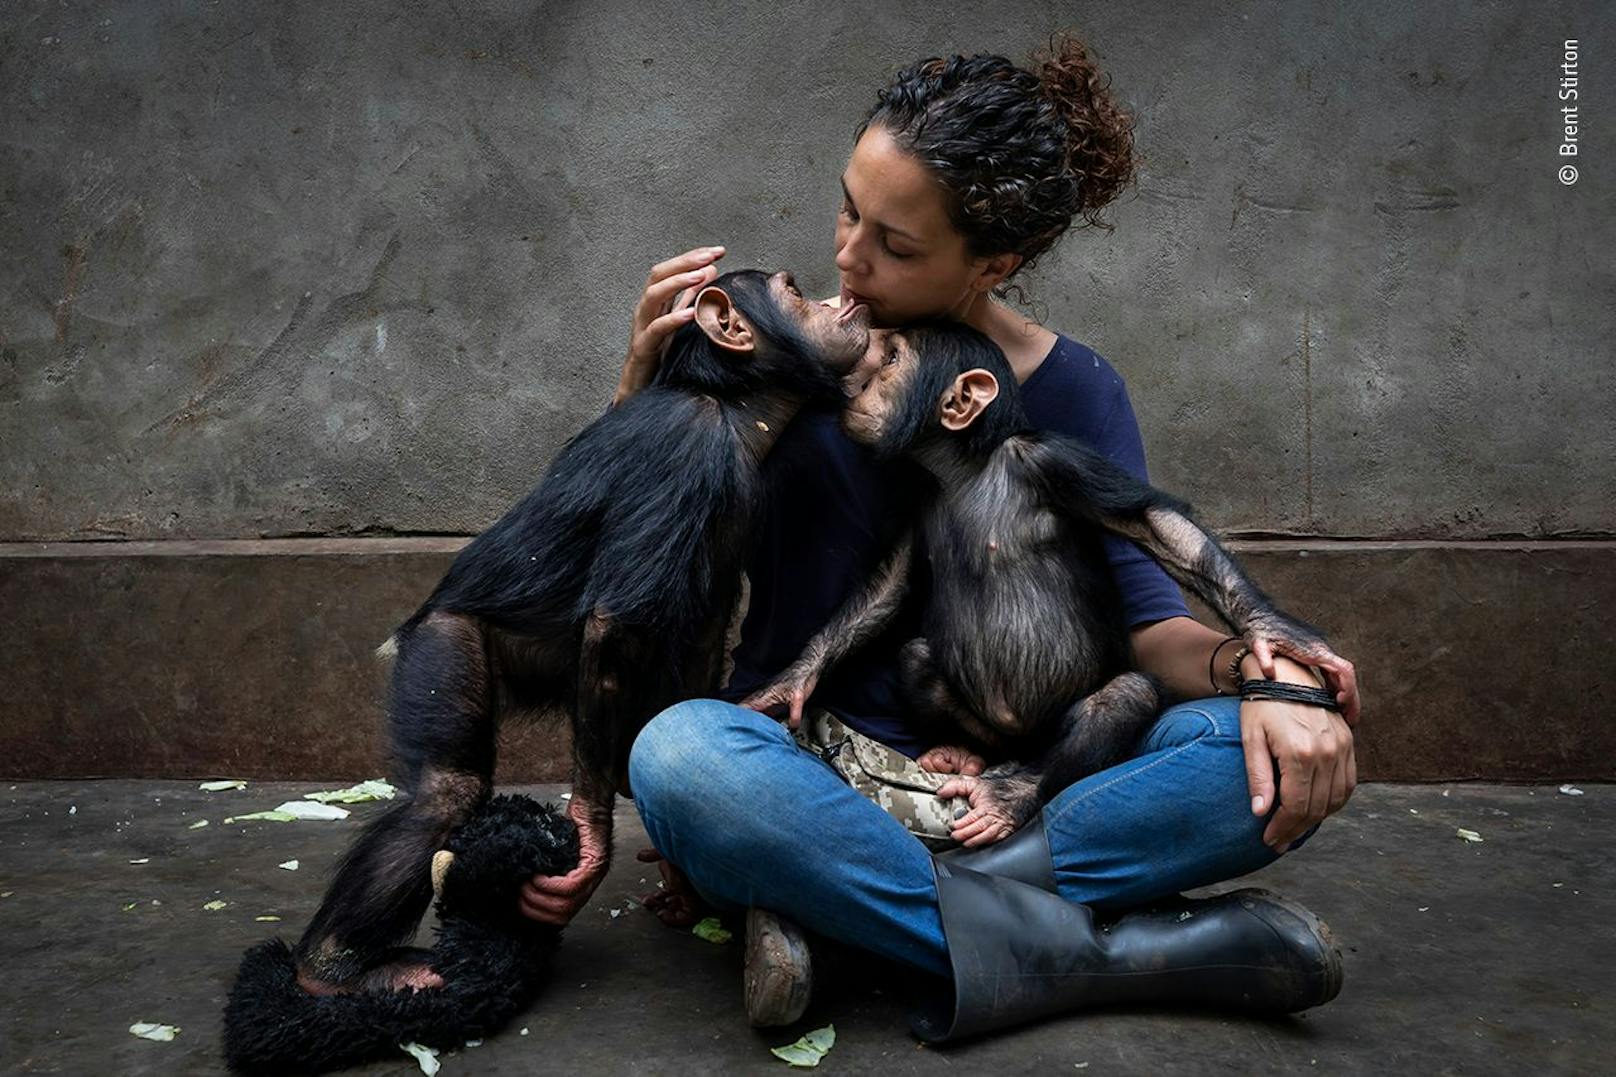 Brent Stirton (Südafrika) stellt ein Rehabilitationszentrum vor, das sich um Schimpansen kümmert, die durch den Buschfleischhandel verwaist sind. Die Leiterin des Zentrums sitzt bei einem frisch geretteten Schimpansen, den sie langsam an die anderen Tiere heranführt. Die jungen Schimpansen erhalten eine individuelle Betreuung, um ihre psychischen und physischen Traumata zu lindern. Diese Schimpansen haben Glück. Weniger als einer von zehn wird gerettet, nachdem er mit ansehen musste, wie die erwachsenen Tiere seiner Gruppe zur Fleischgewinnung getötet wurden. Die meisten sind verhungert und haben viel Leid erfahren.